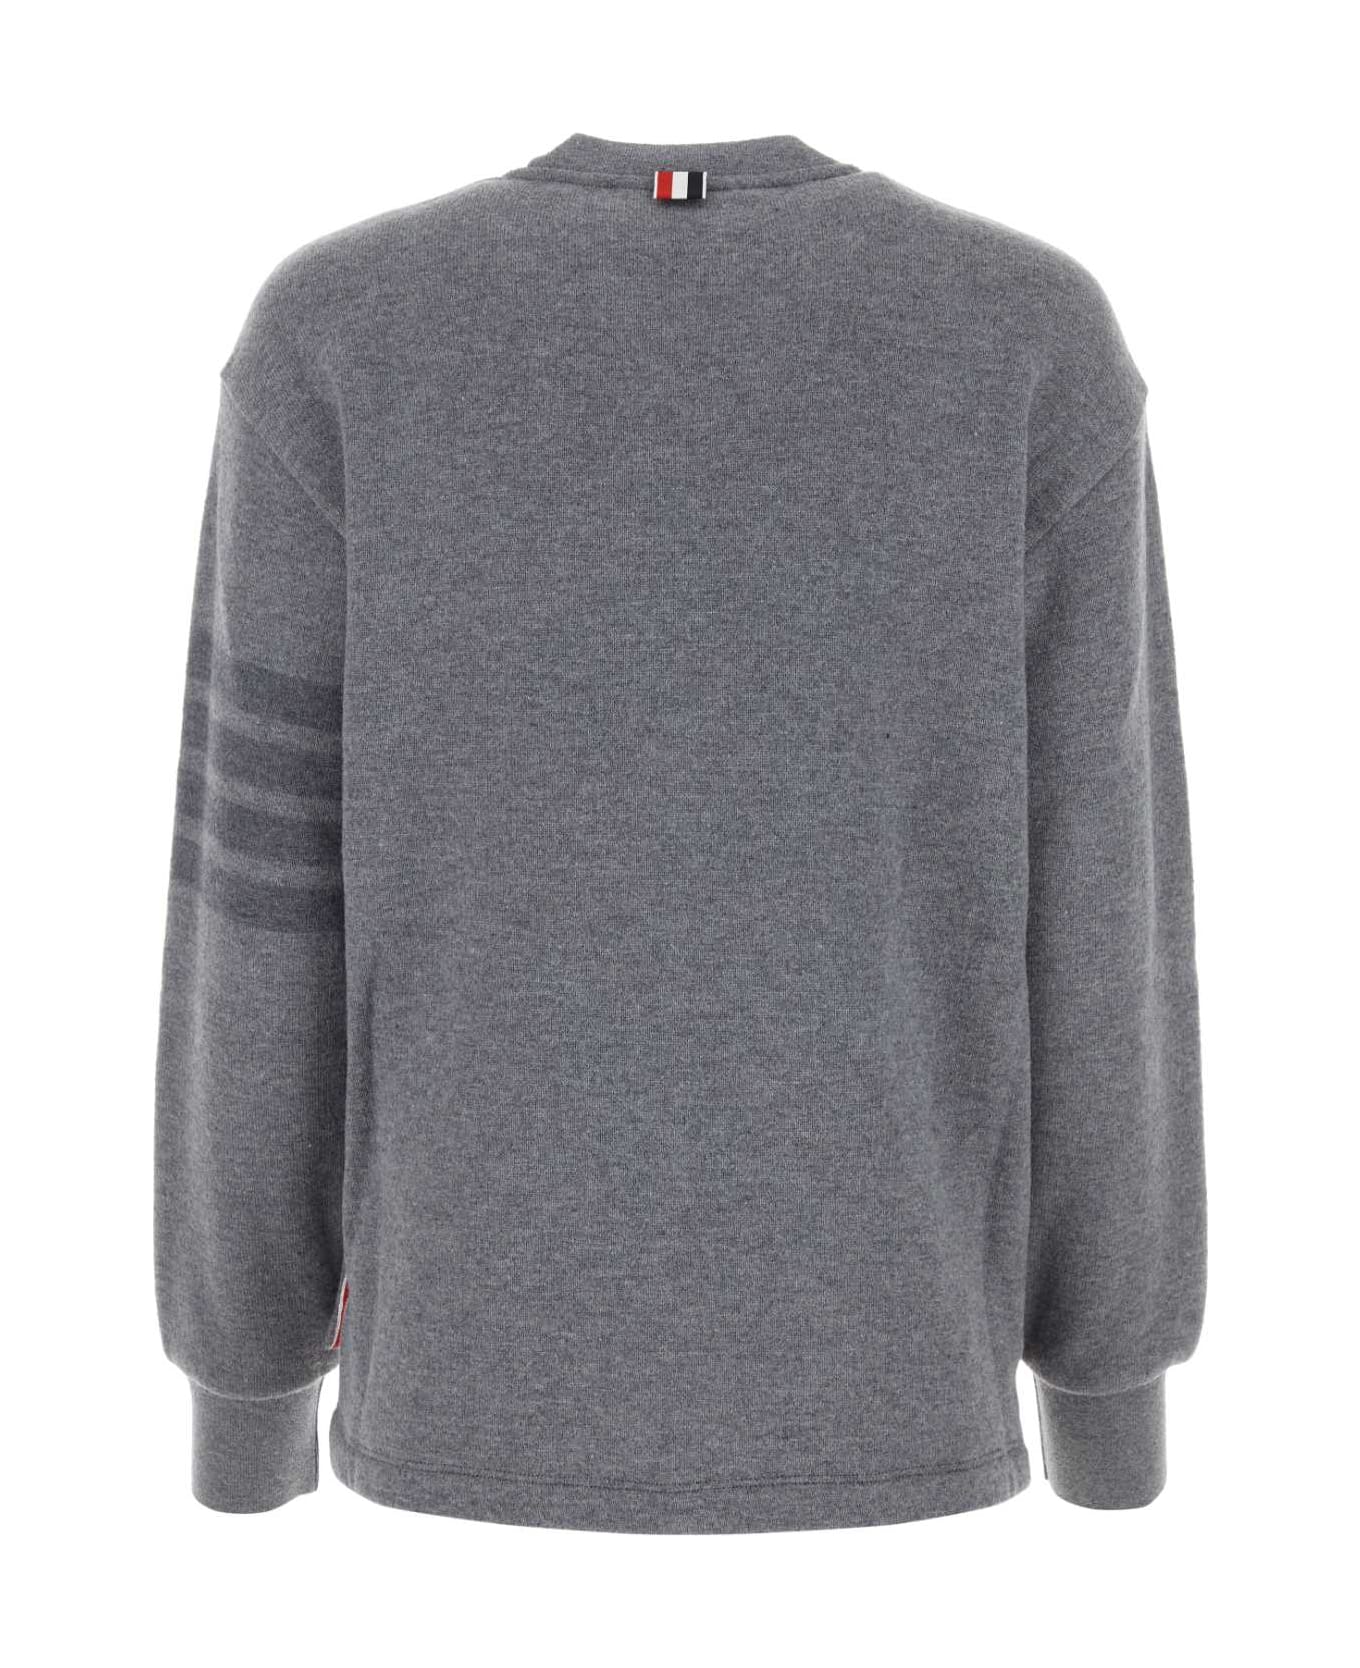 Thom Browne Grey Wool Sweatshirt - LTGREY